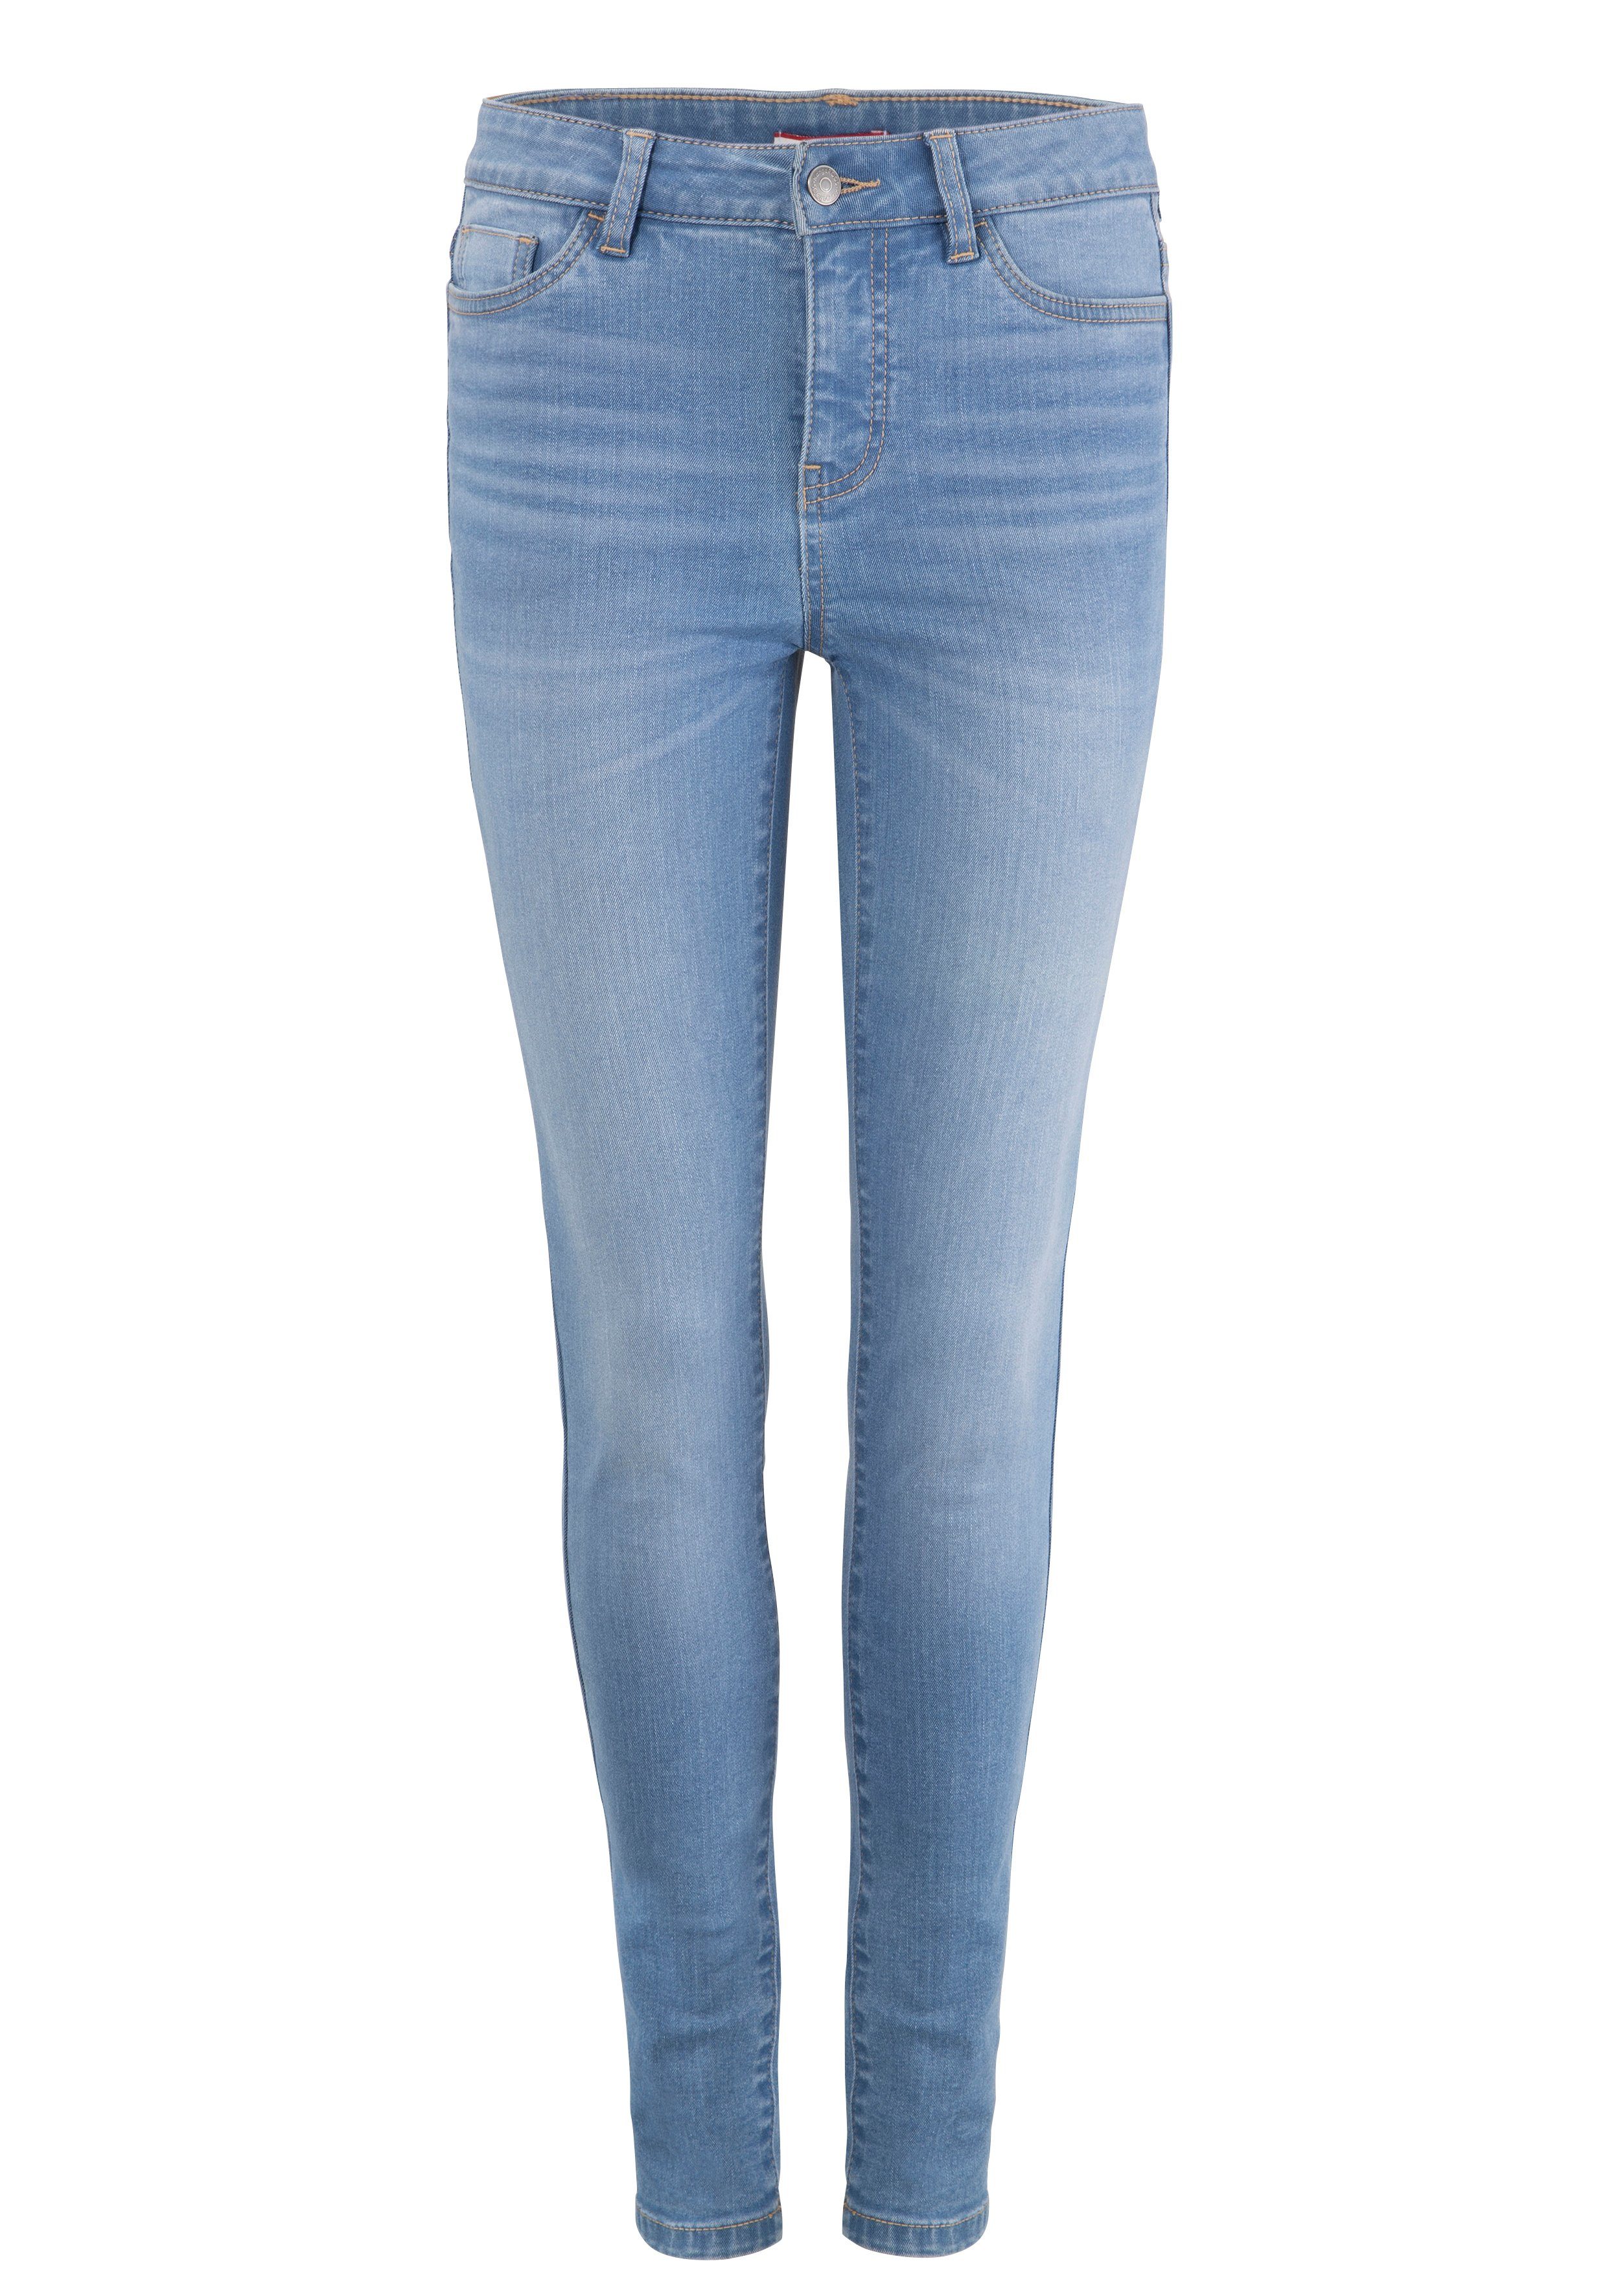 KangaROOS 5-Pocket-Jeans SUPER SKINNY HIGH used-Effekt RISE light-blue-used mit